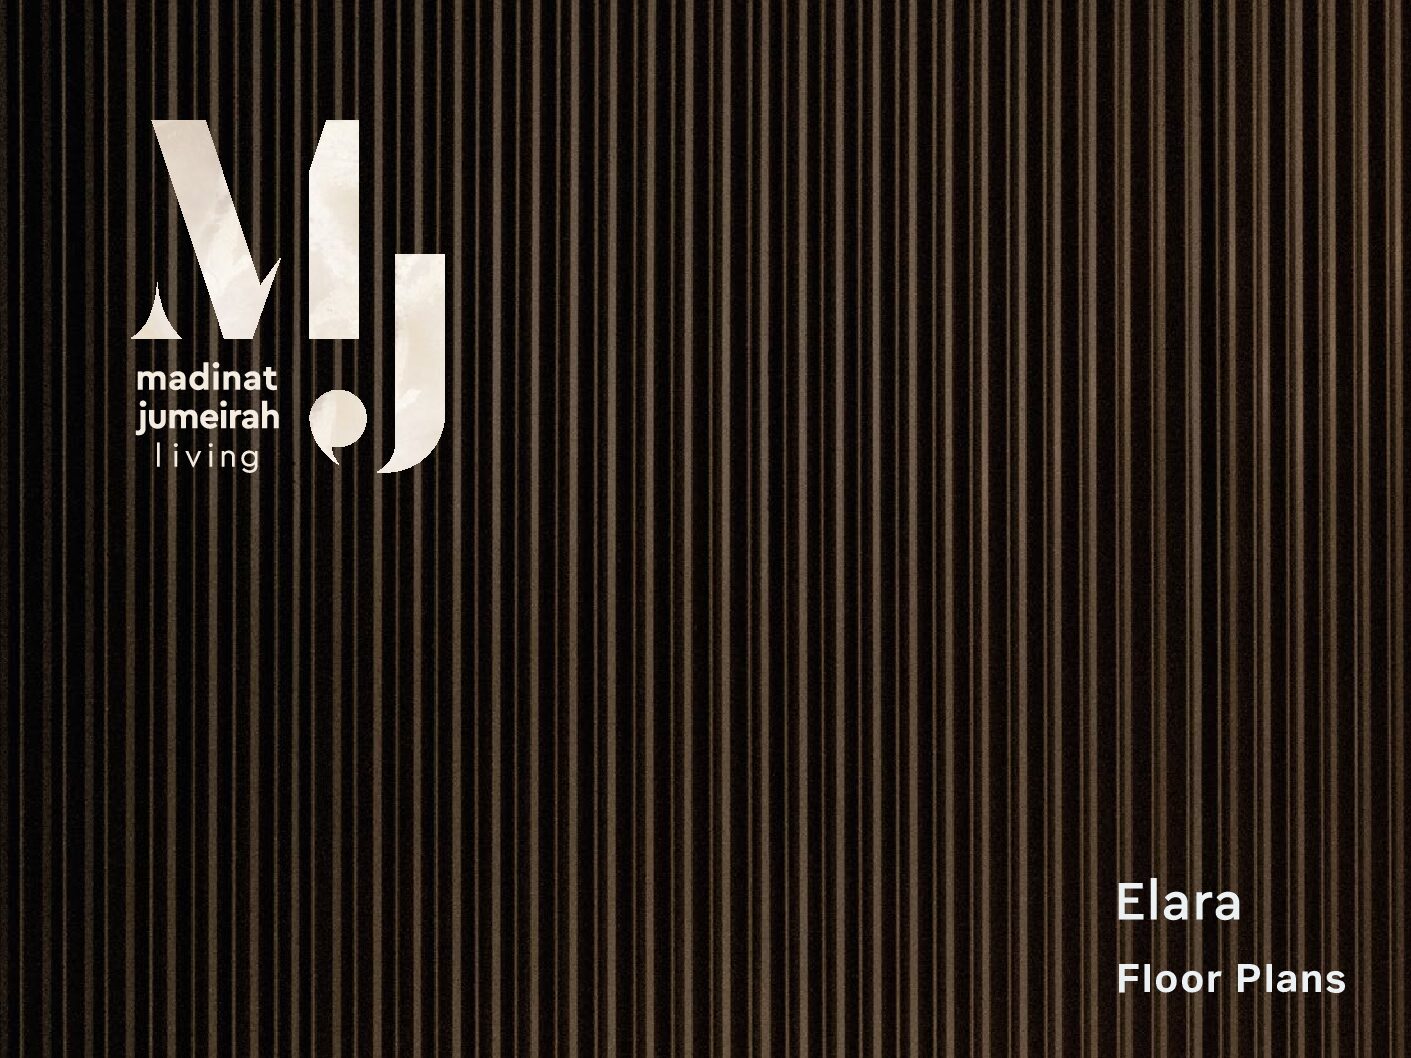 MJL_Elara Floor Plans-English